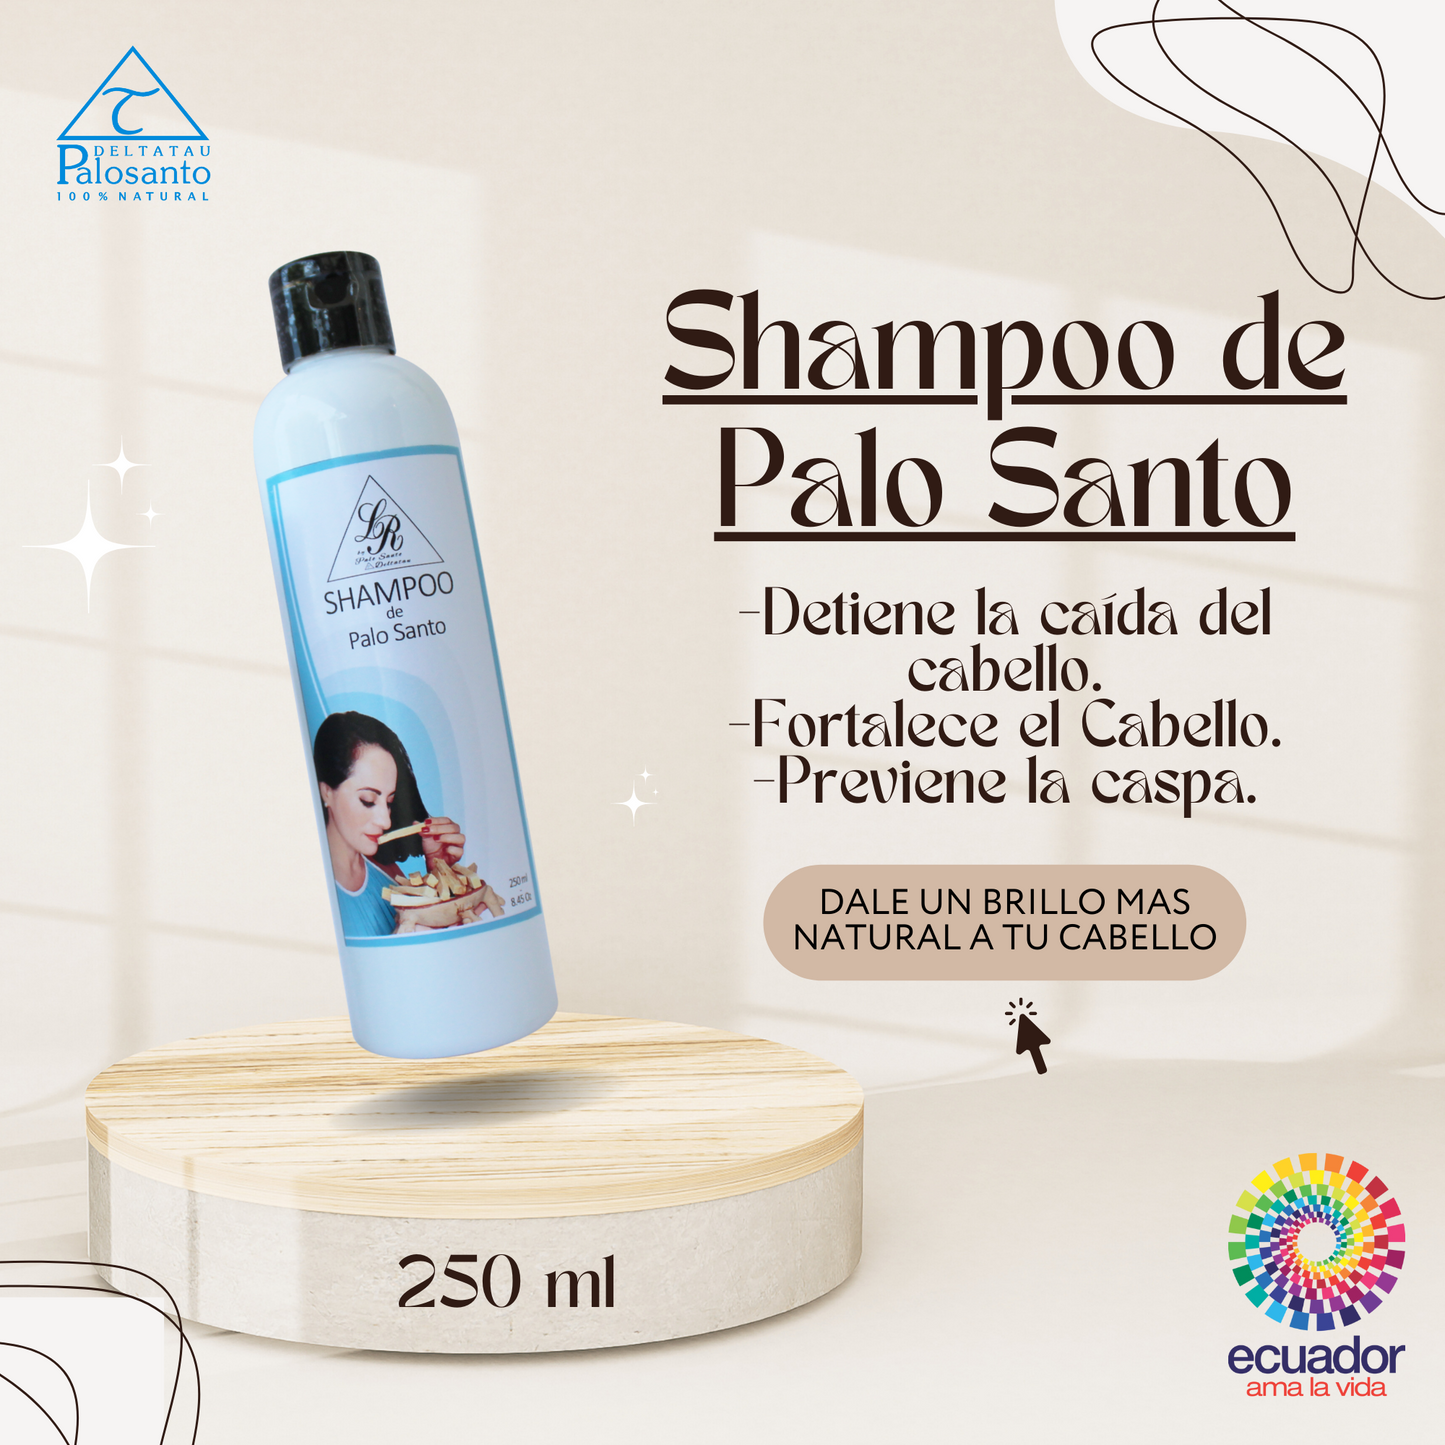 Shampoo de Palo Santo